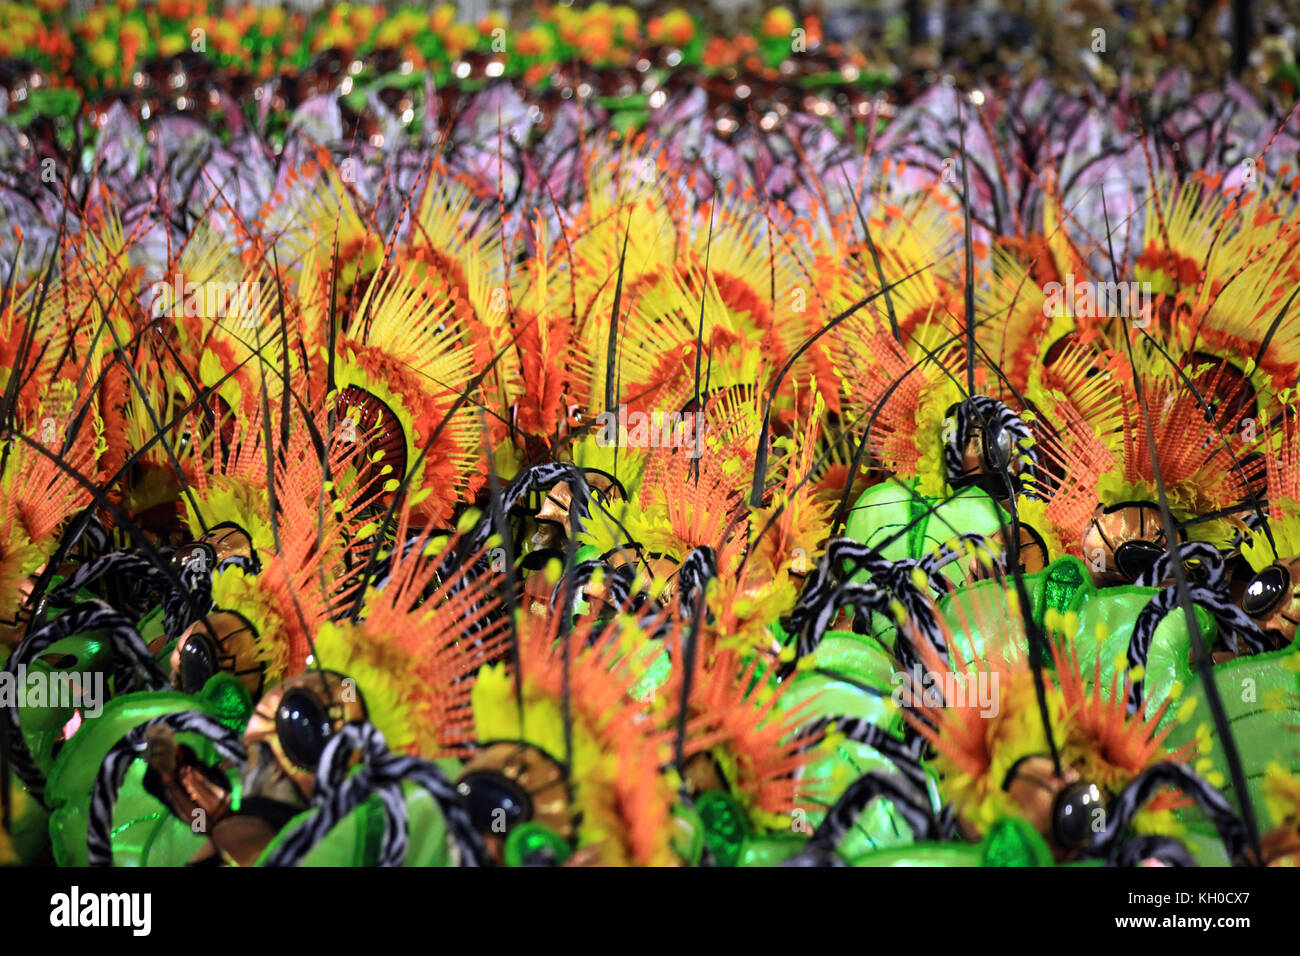 Tausende von Teilnehmern tanzen im Rhythmus der Karnevalsschläge während der bunten Parade der Sambaschule Grande Rio im Sambodromo beim Karneval 2014 in Rio. Brasilien 03.03.2014. Stockfoto